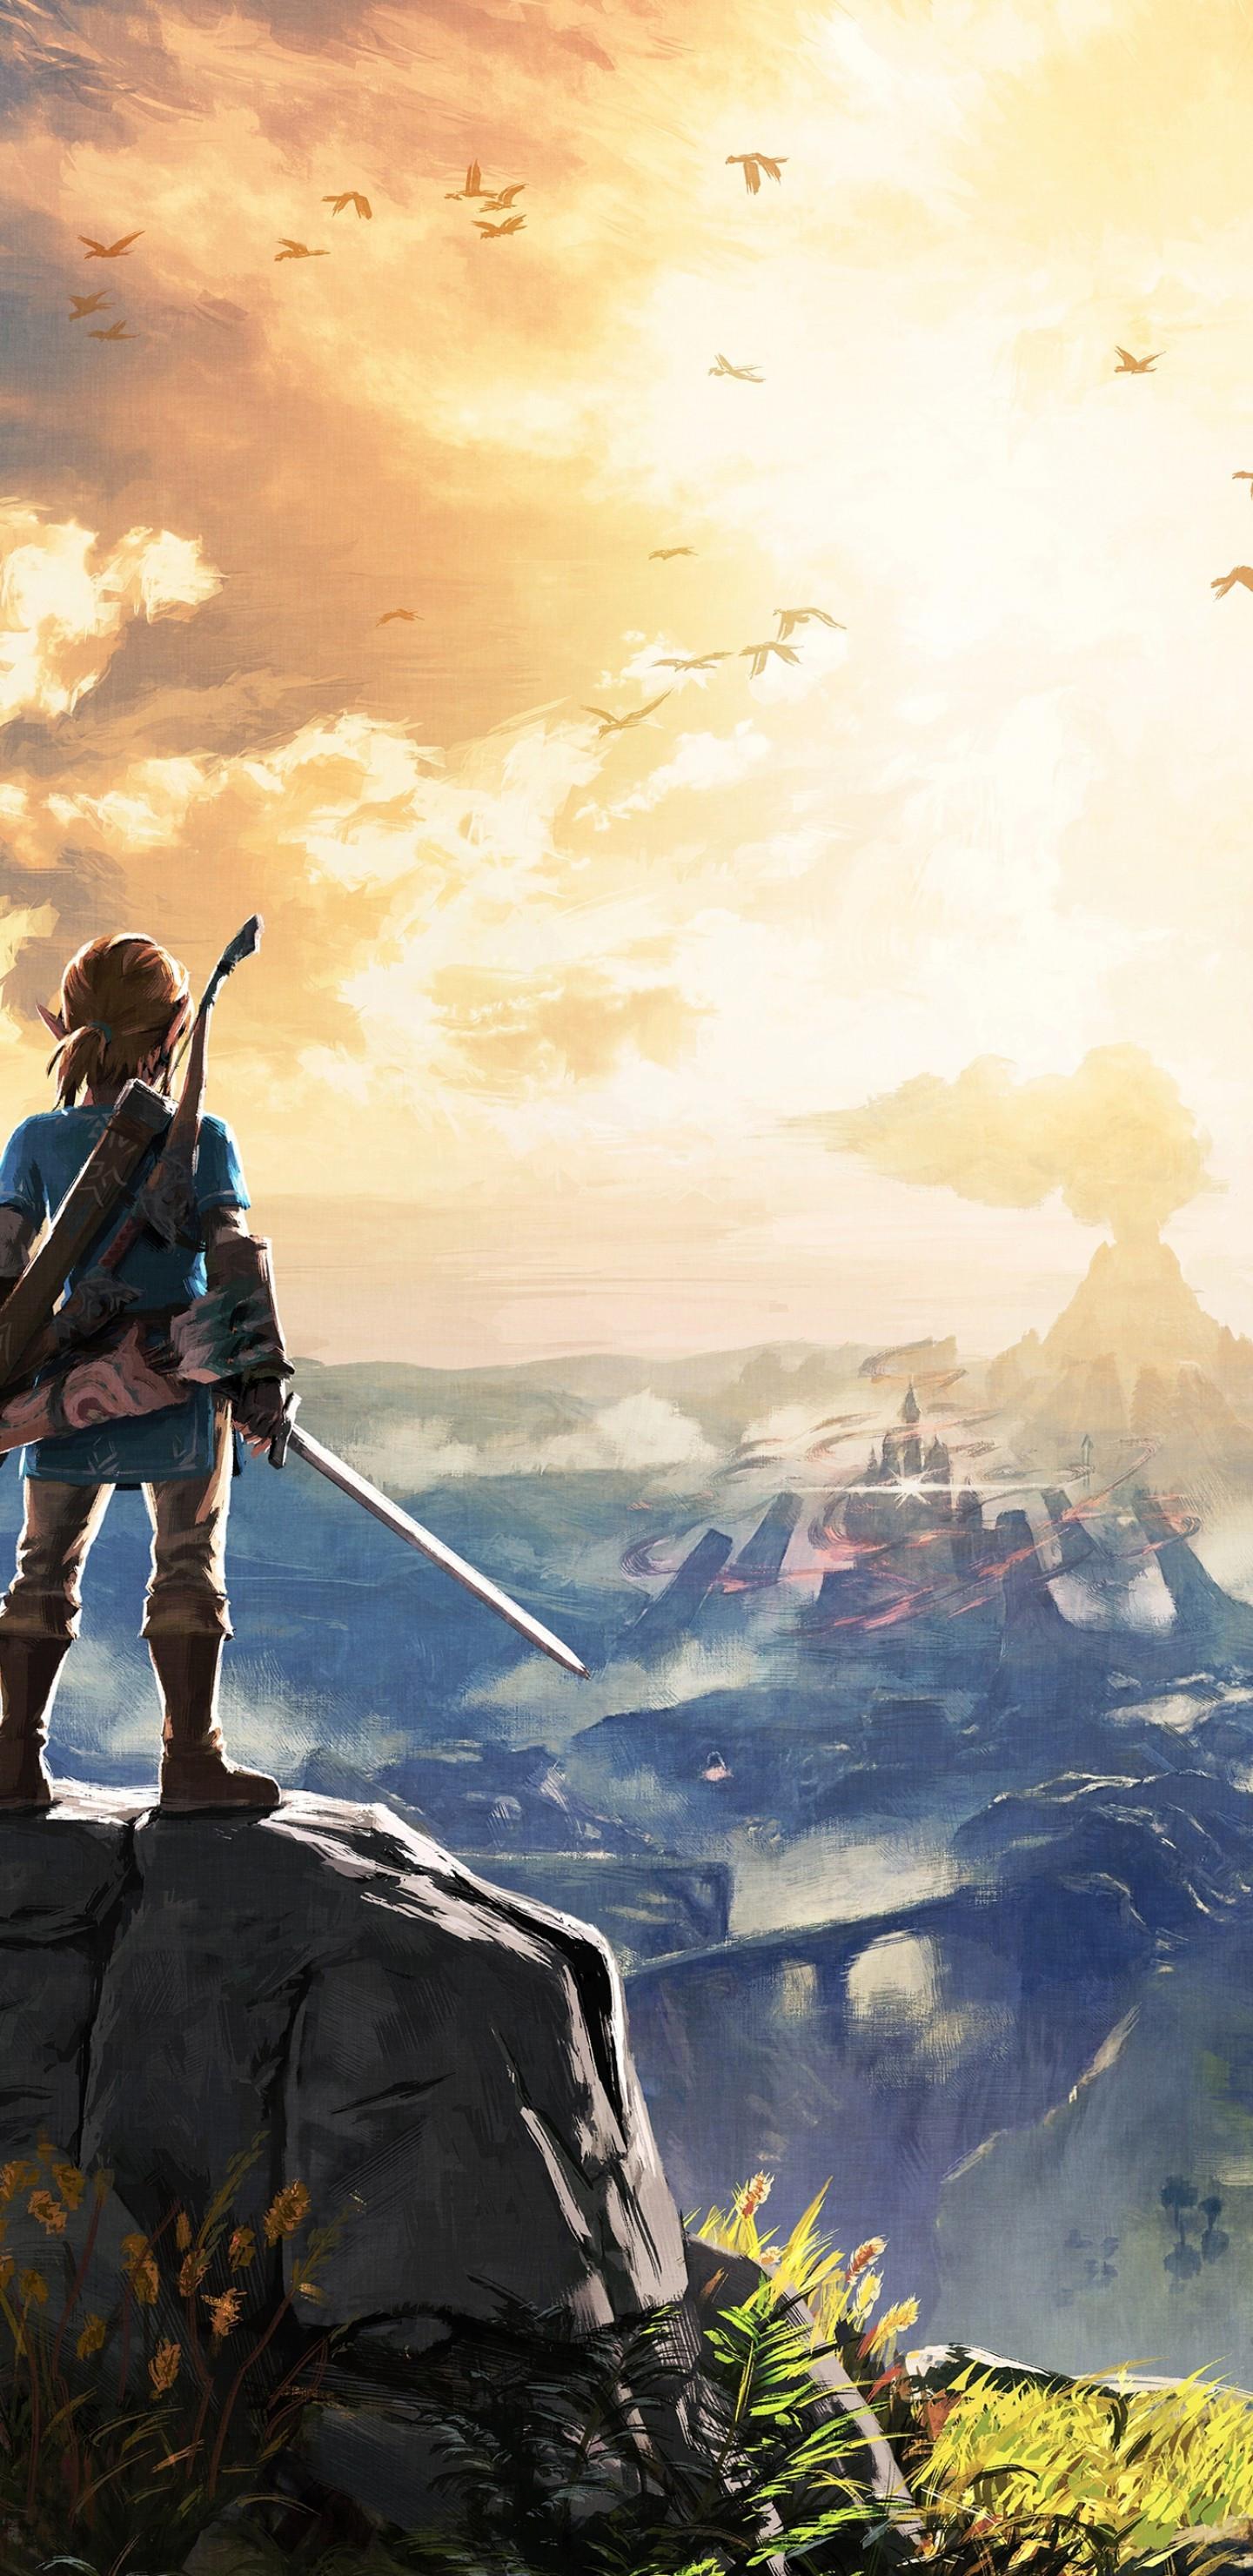 1440 x 2960 · jpeg - Download 1440x2960 The Legend Of Zelda: Breath Of The Wild, Link ...